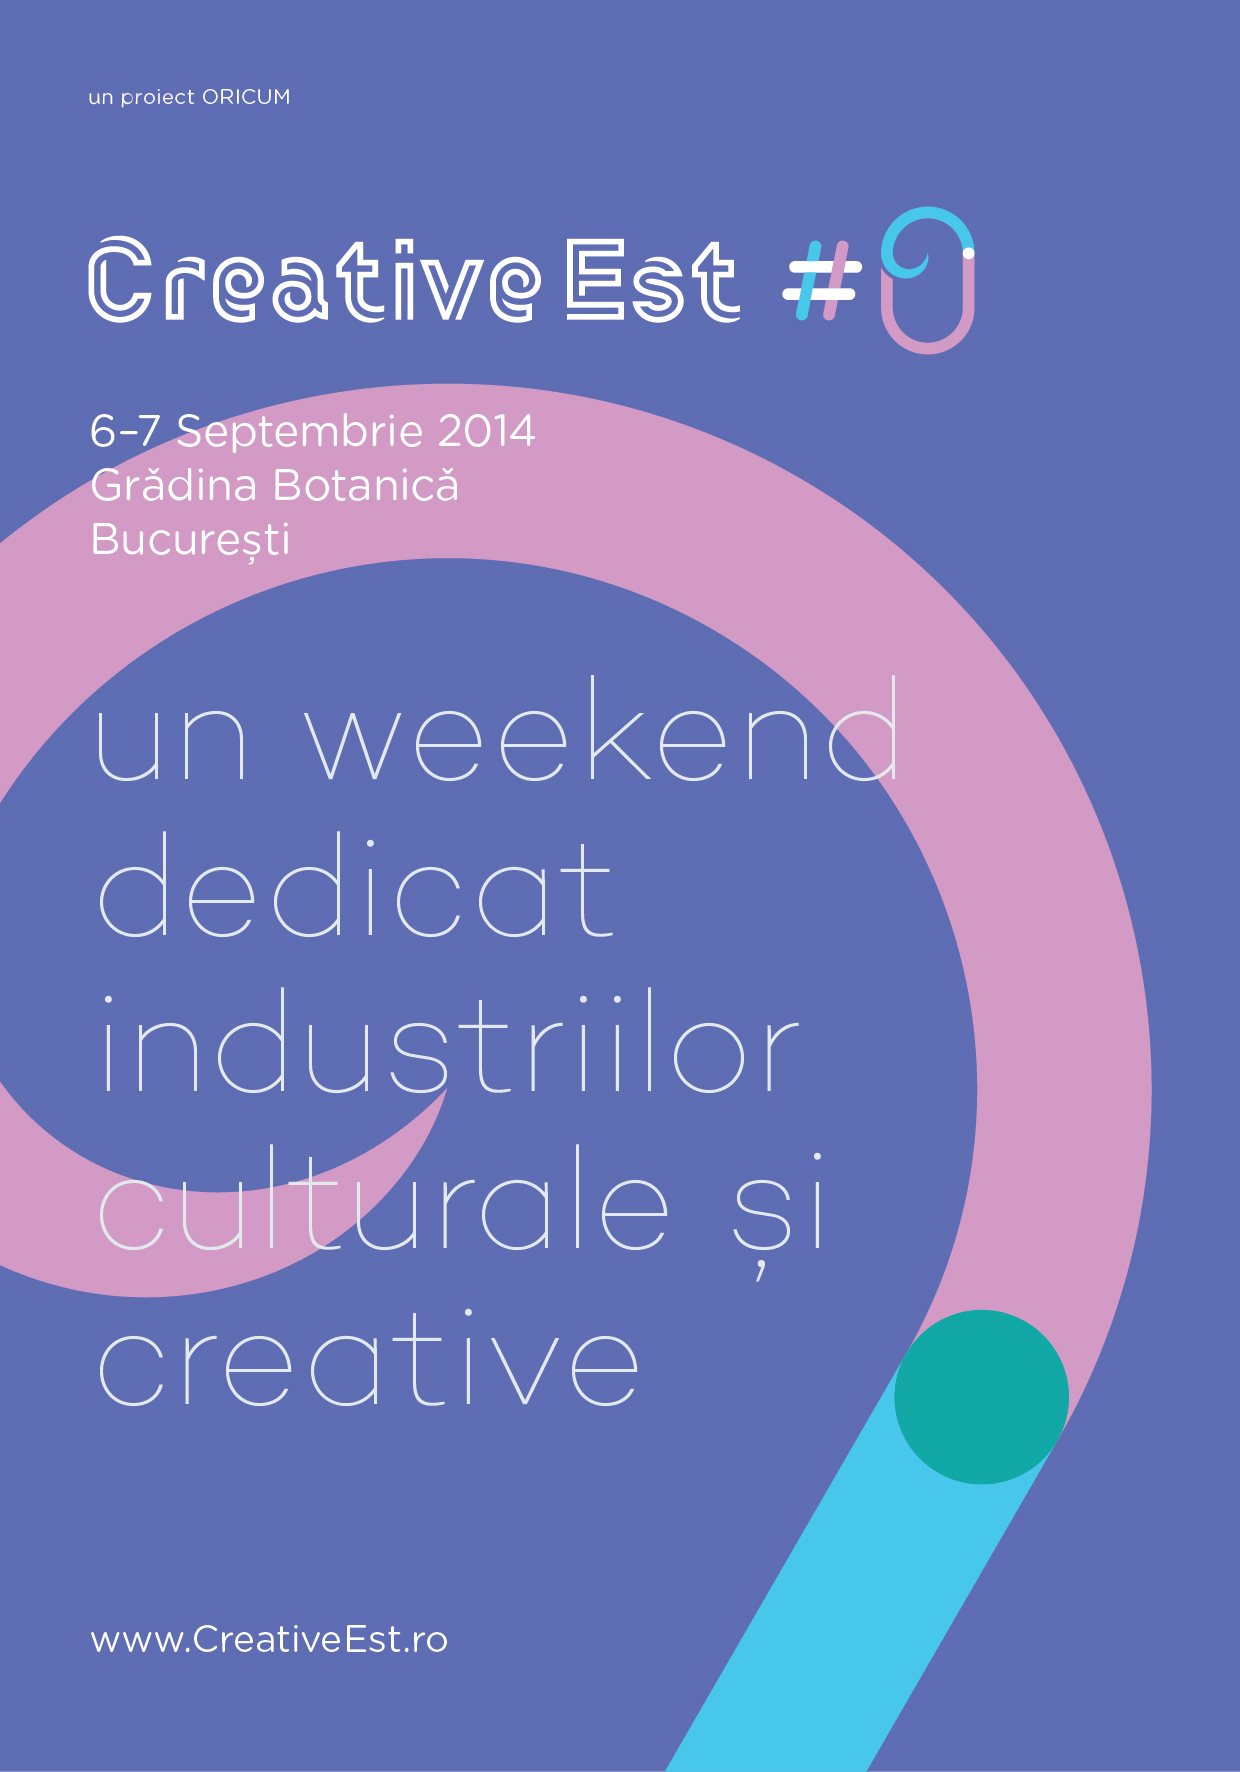 Creative Est #0, primul festival dedicat industriilor culturale si creative din Romania